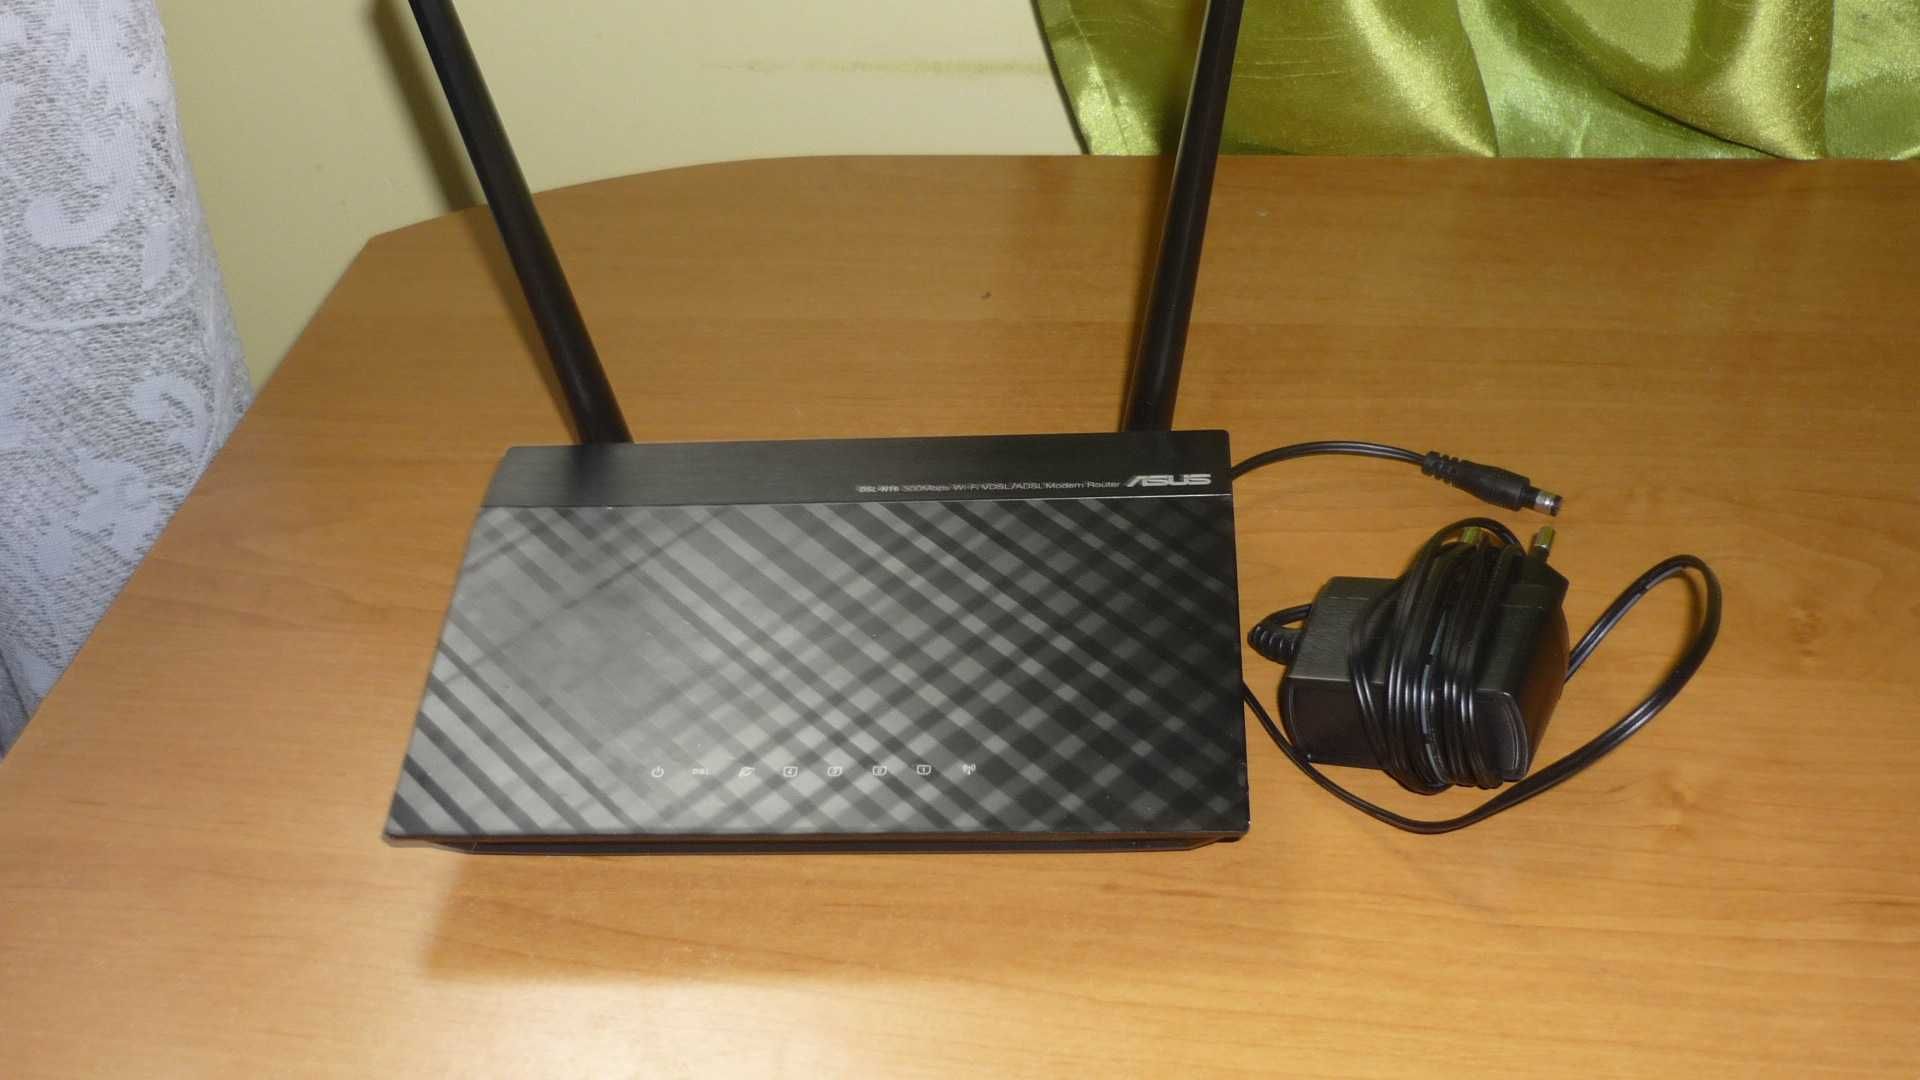 Ruter Asus Model DSL-N16 Wireless-N300